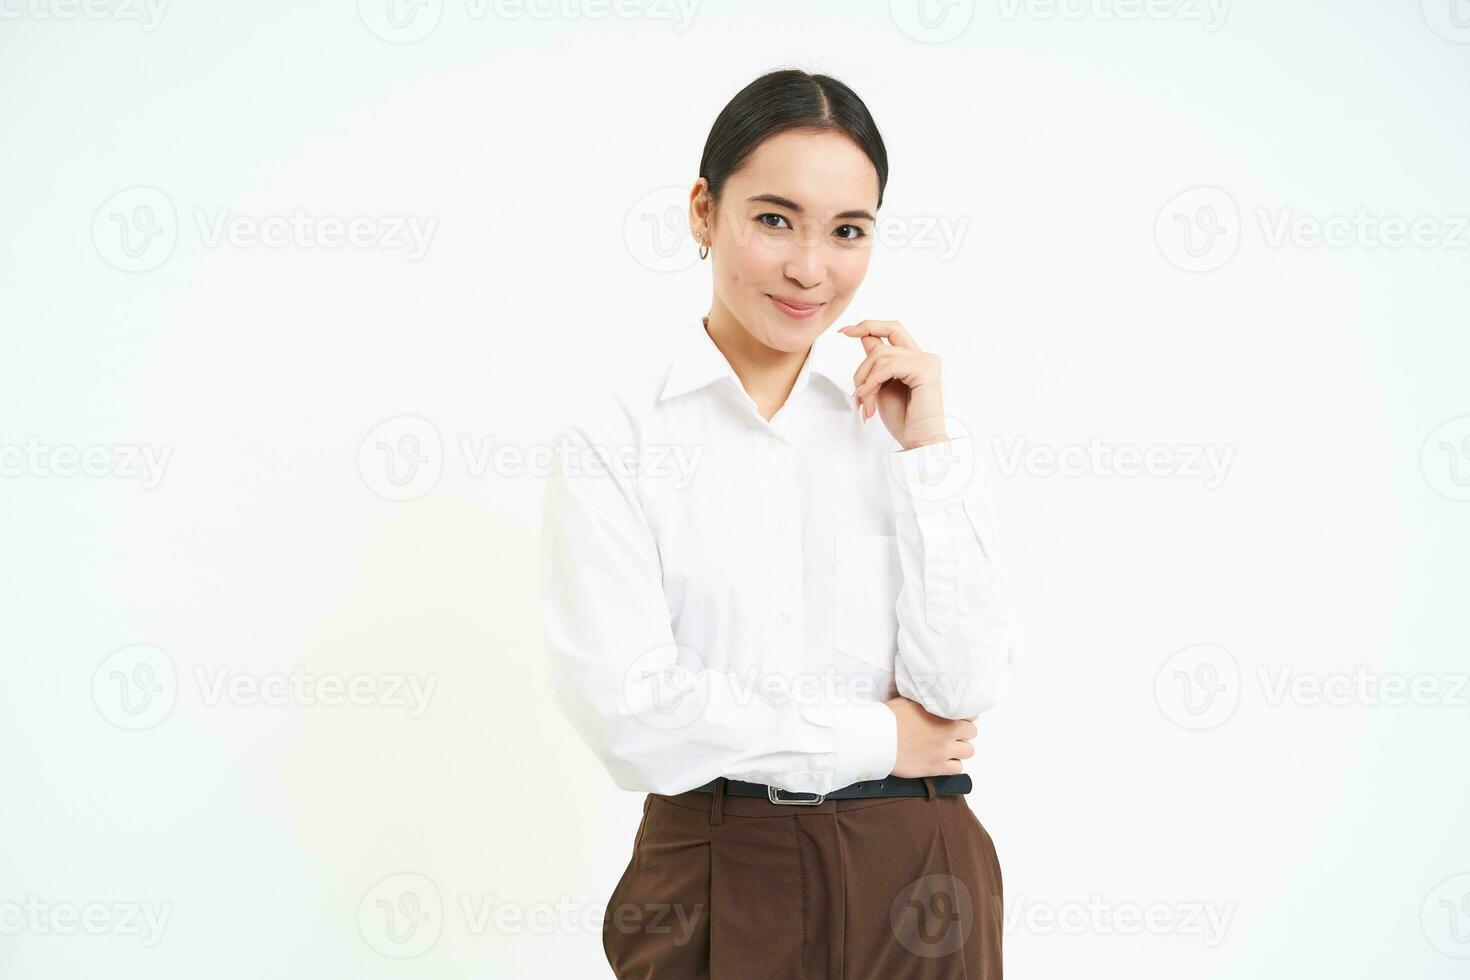 påverkare och företag. självsäker ung affärskvinna med professionell attityd, står över vit bakgrund foto